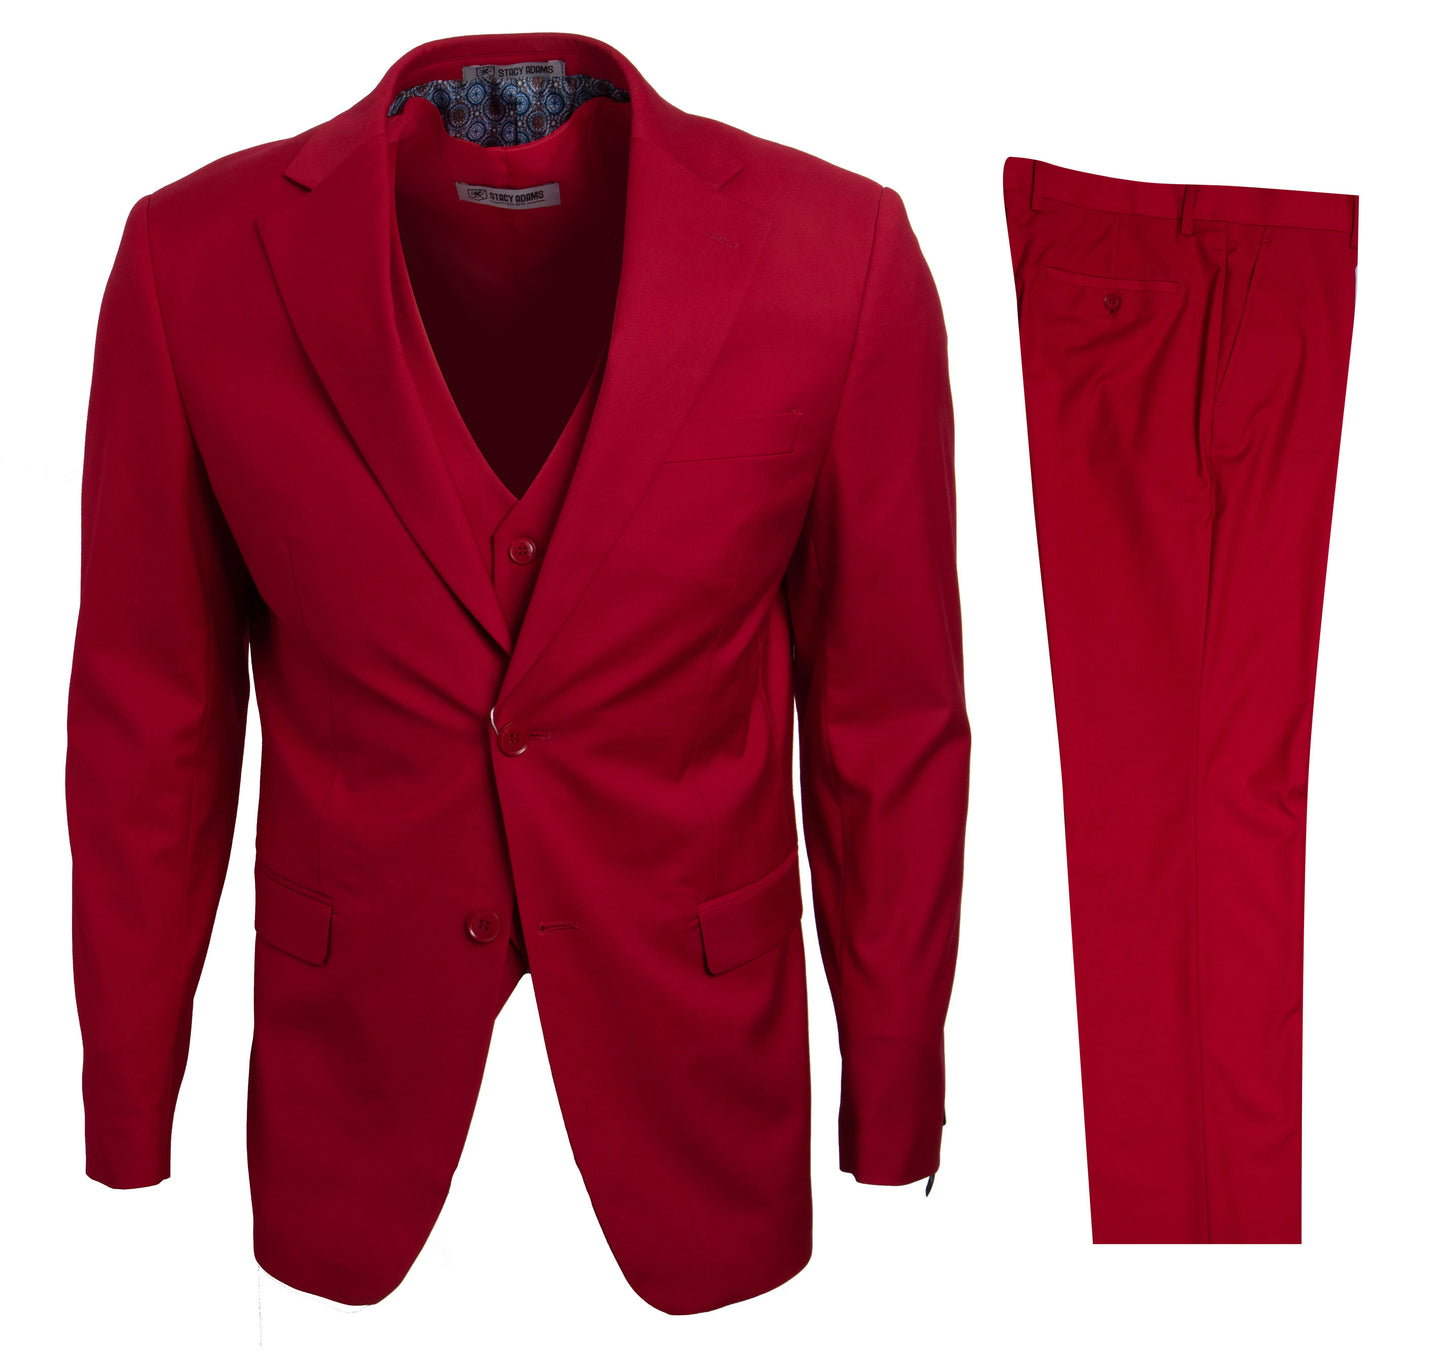 Red Stacy Adams Men's Suit